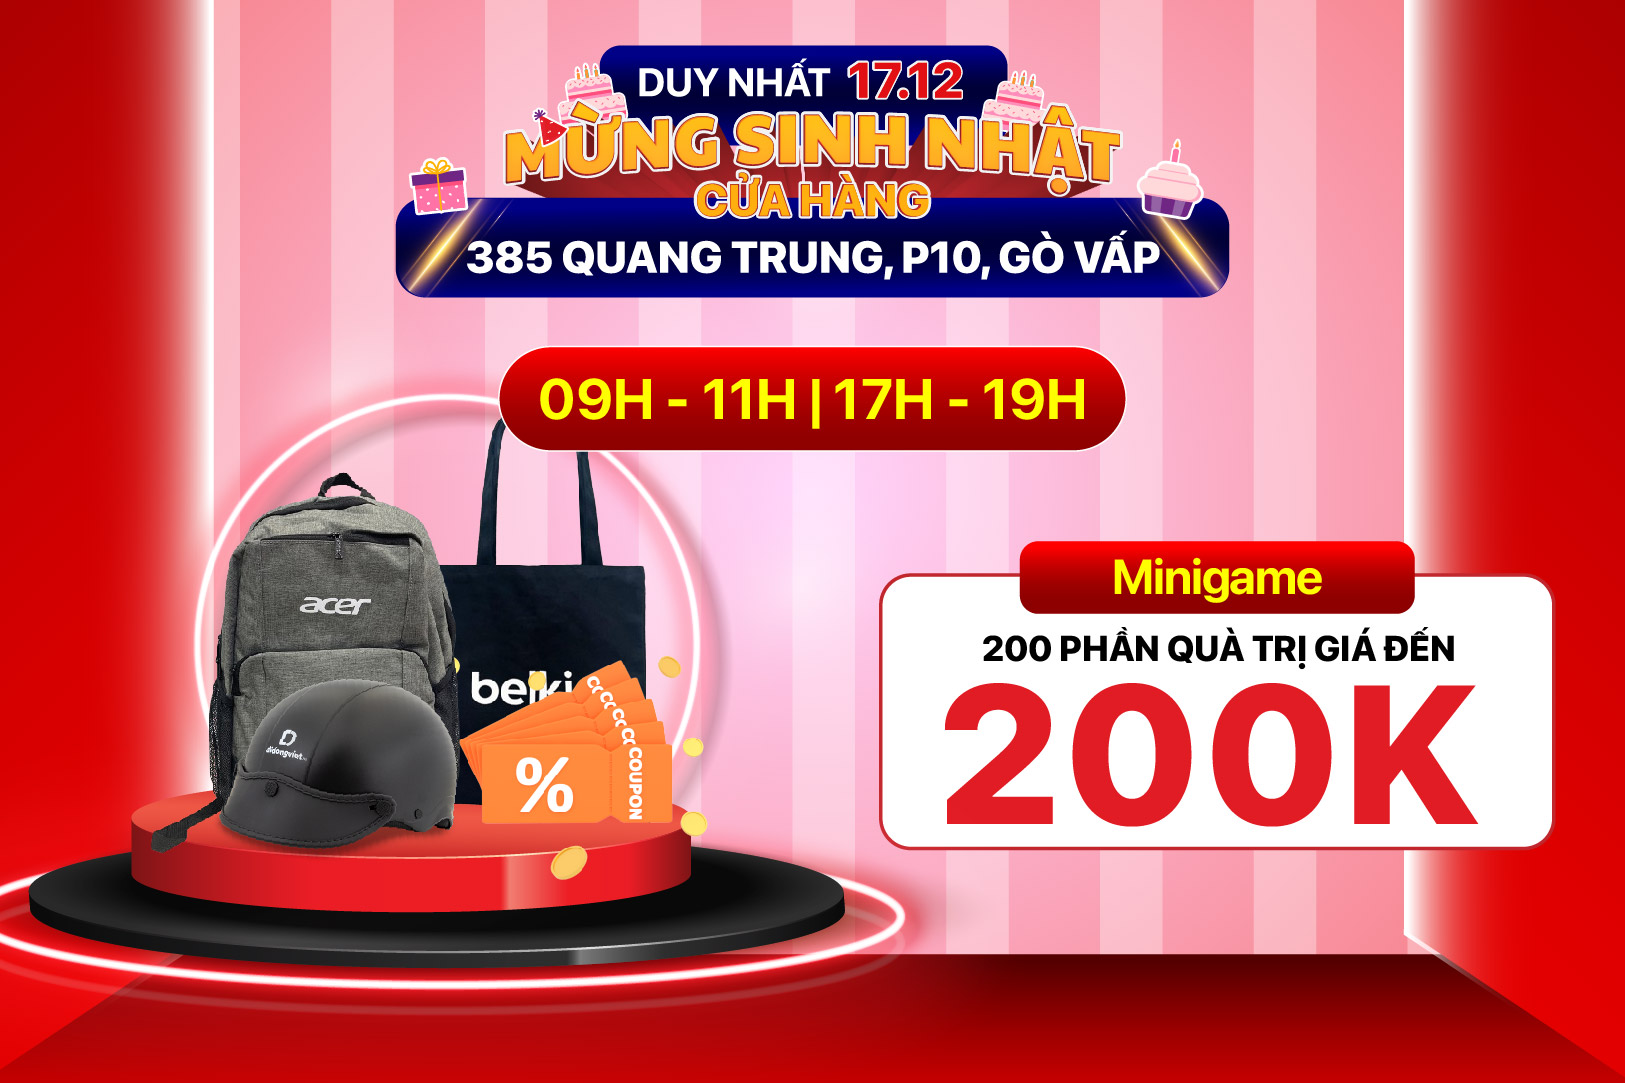 Mừng sinh nhật Di Động Việt 385 Quang Trung, Gò Vấp. Điện thoại | Tablet | Mac giảm thêm đến 1 TRIỆU. Phụ kiện chính hãng giá sốc từ 49K. Tham gia game nhận hơn 200 phần quà miễn phí. Duy nhất 17.12 cam kết RẺ HƠN CÁC LOẠI RẺ